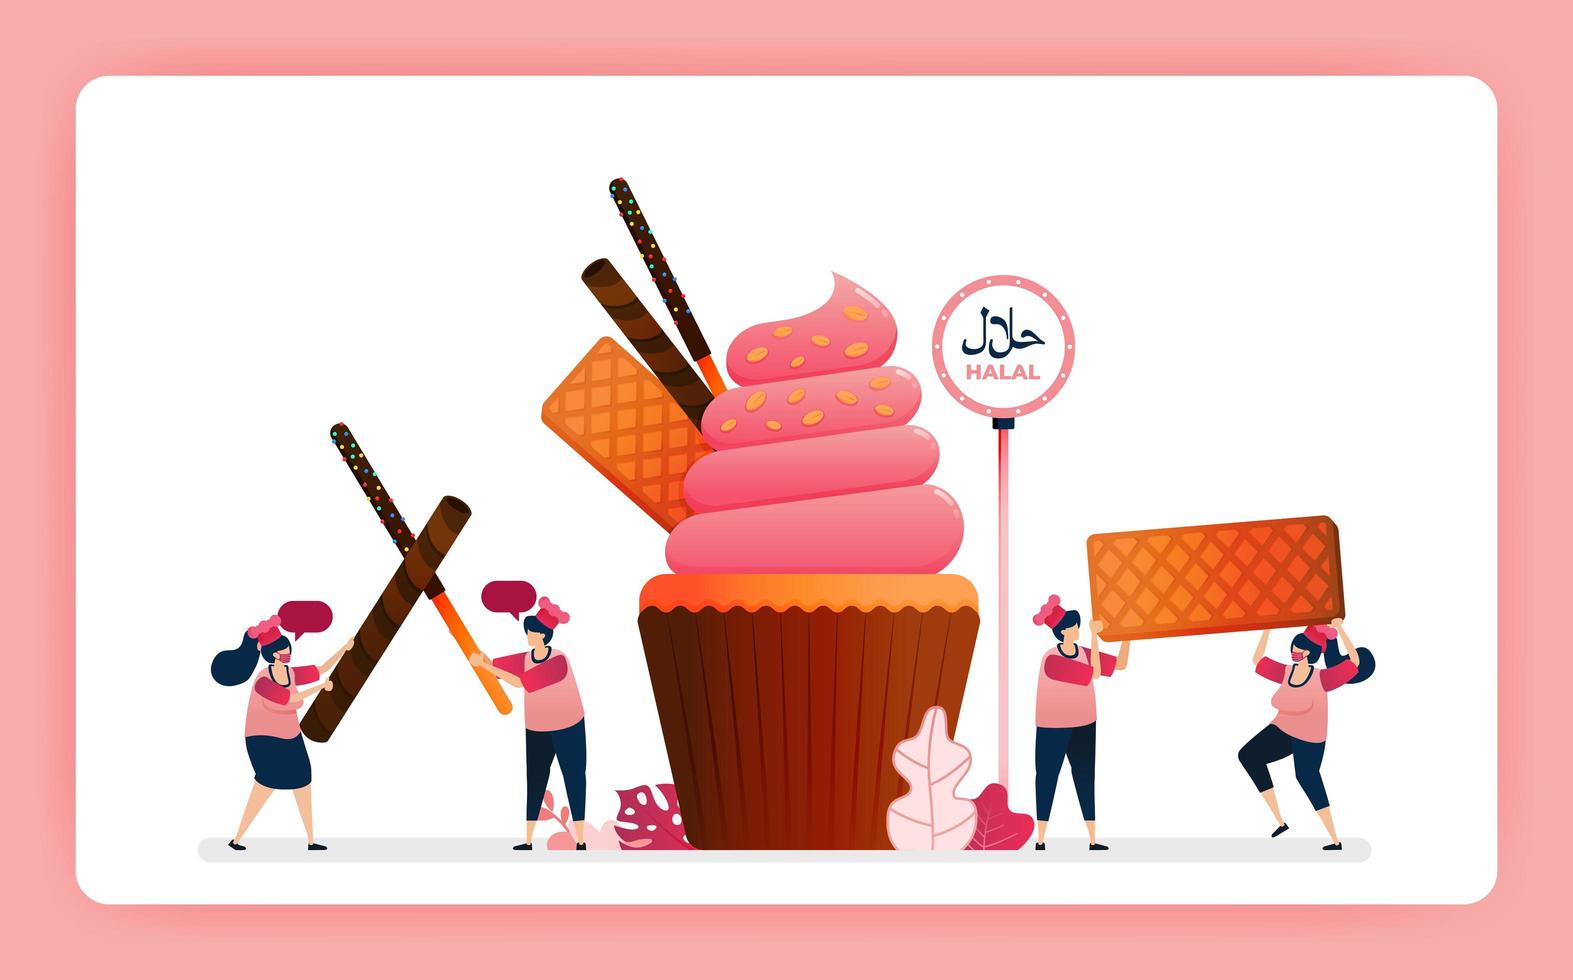 Ilustración de cupcakes de fresa dulce halal de cocinero. muffin con snack waffle, barra de chocolate y wafer. El diseño se puede utilizar para sitios web, sitios web, páginas de destino, banners, aplicaciones móviles, ui ux, carteles, folletos. vector